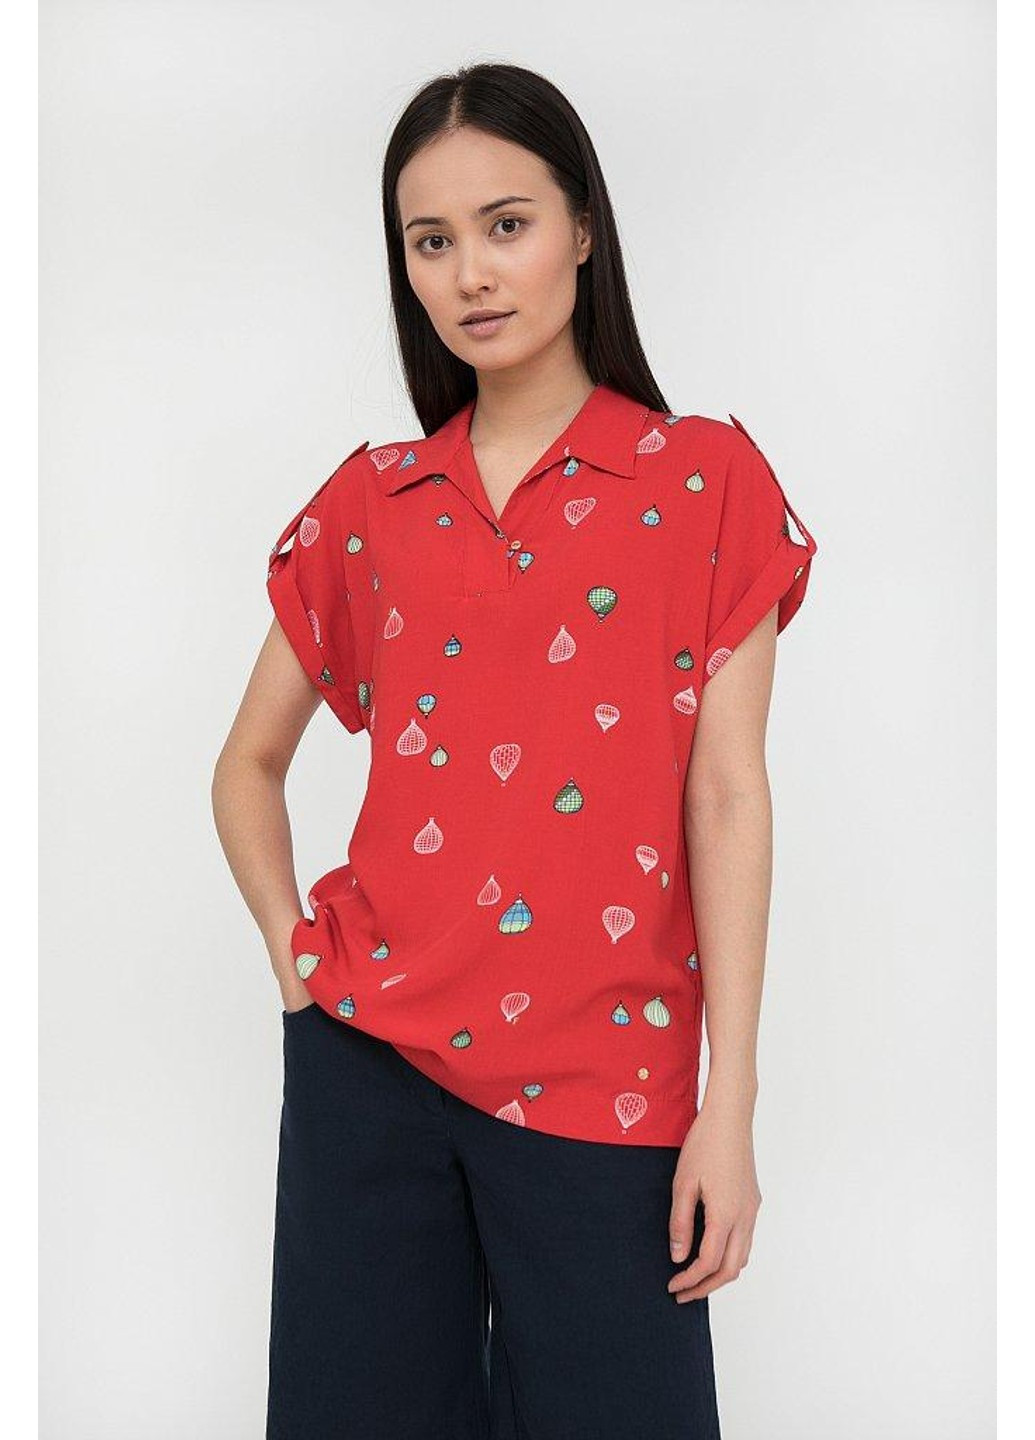 Красная летняя блуза s20-14094-341 Finn Flare